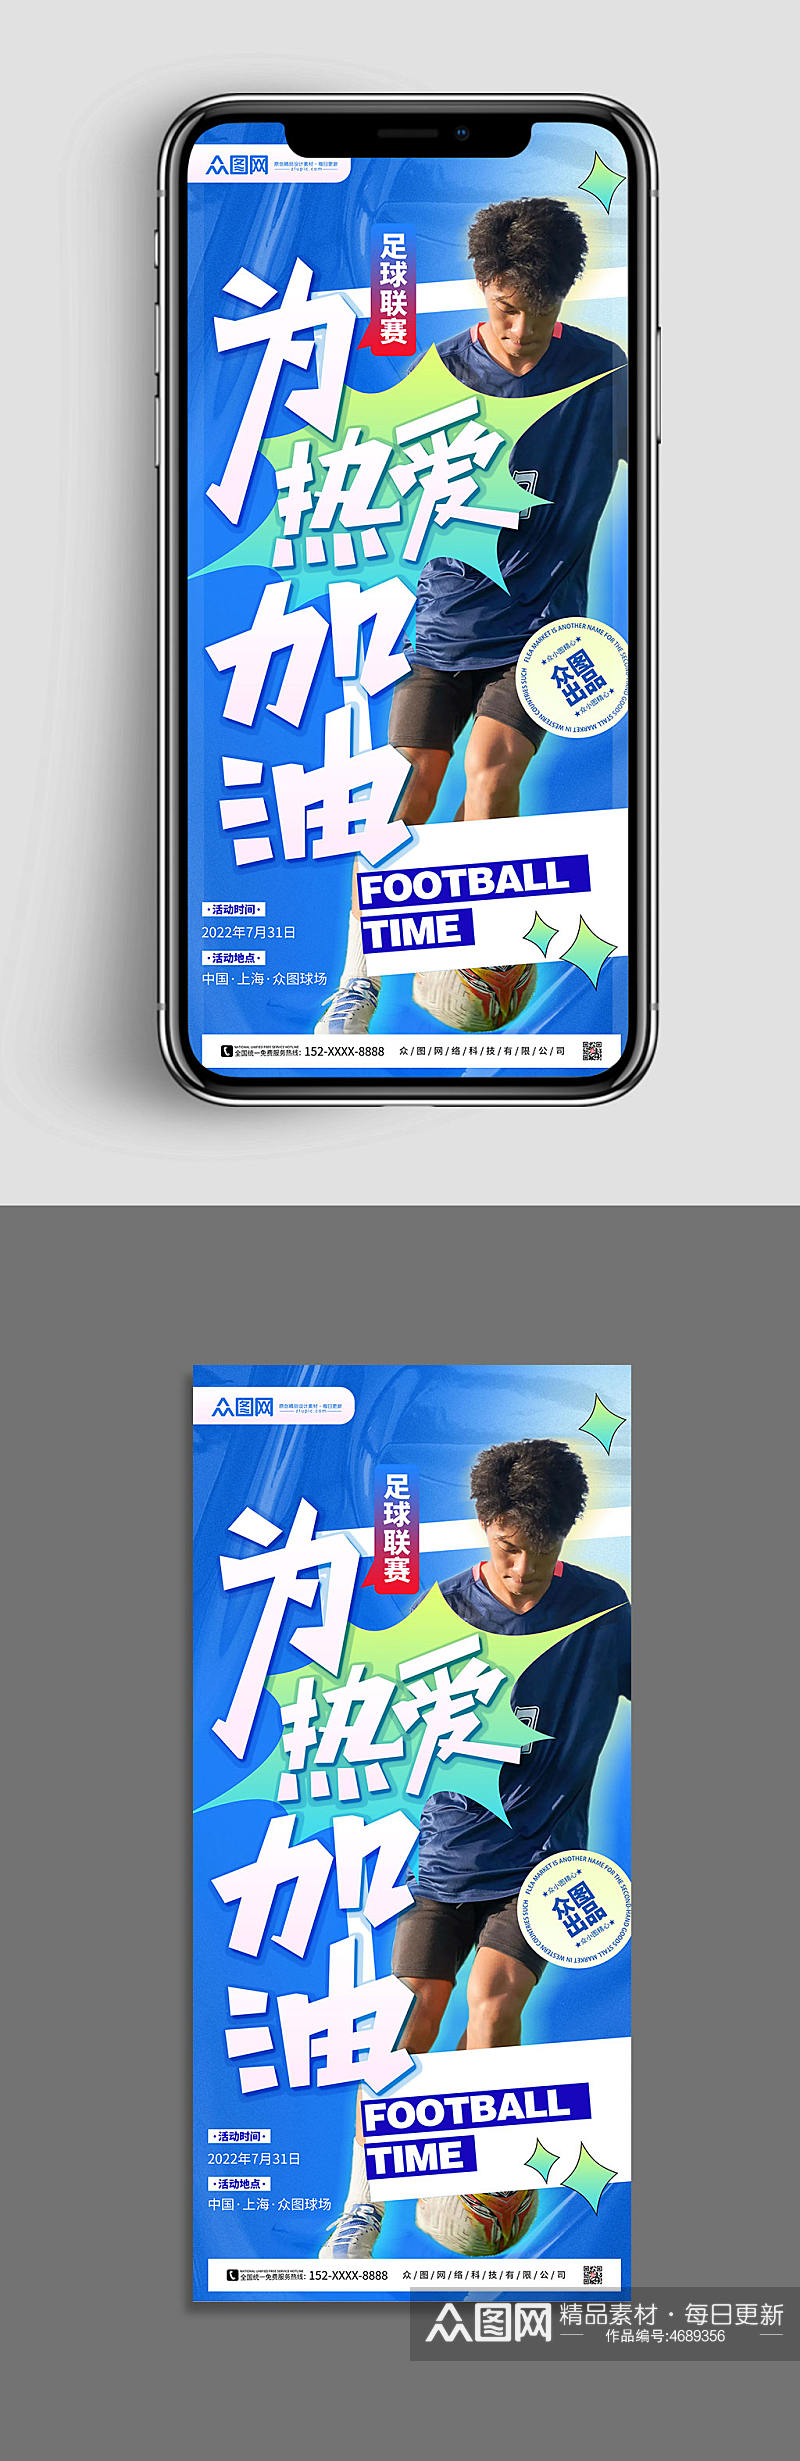 酸性设计男士足球比赛运动人物海报素材